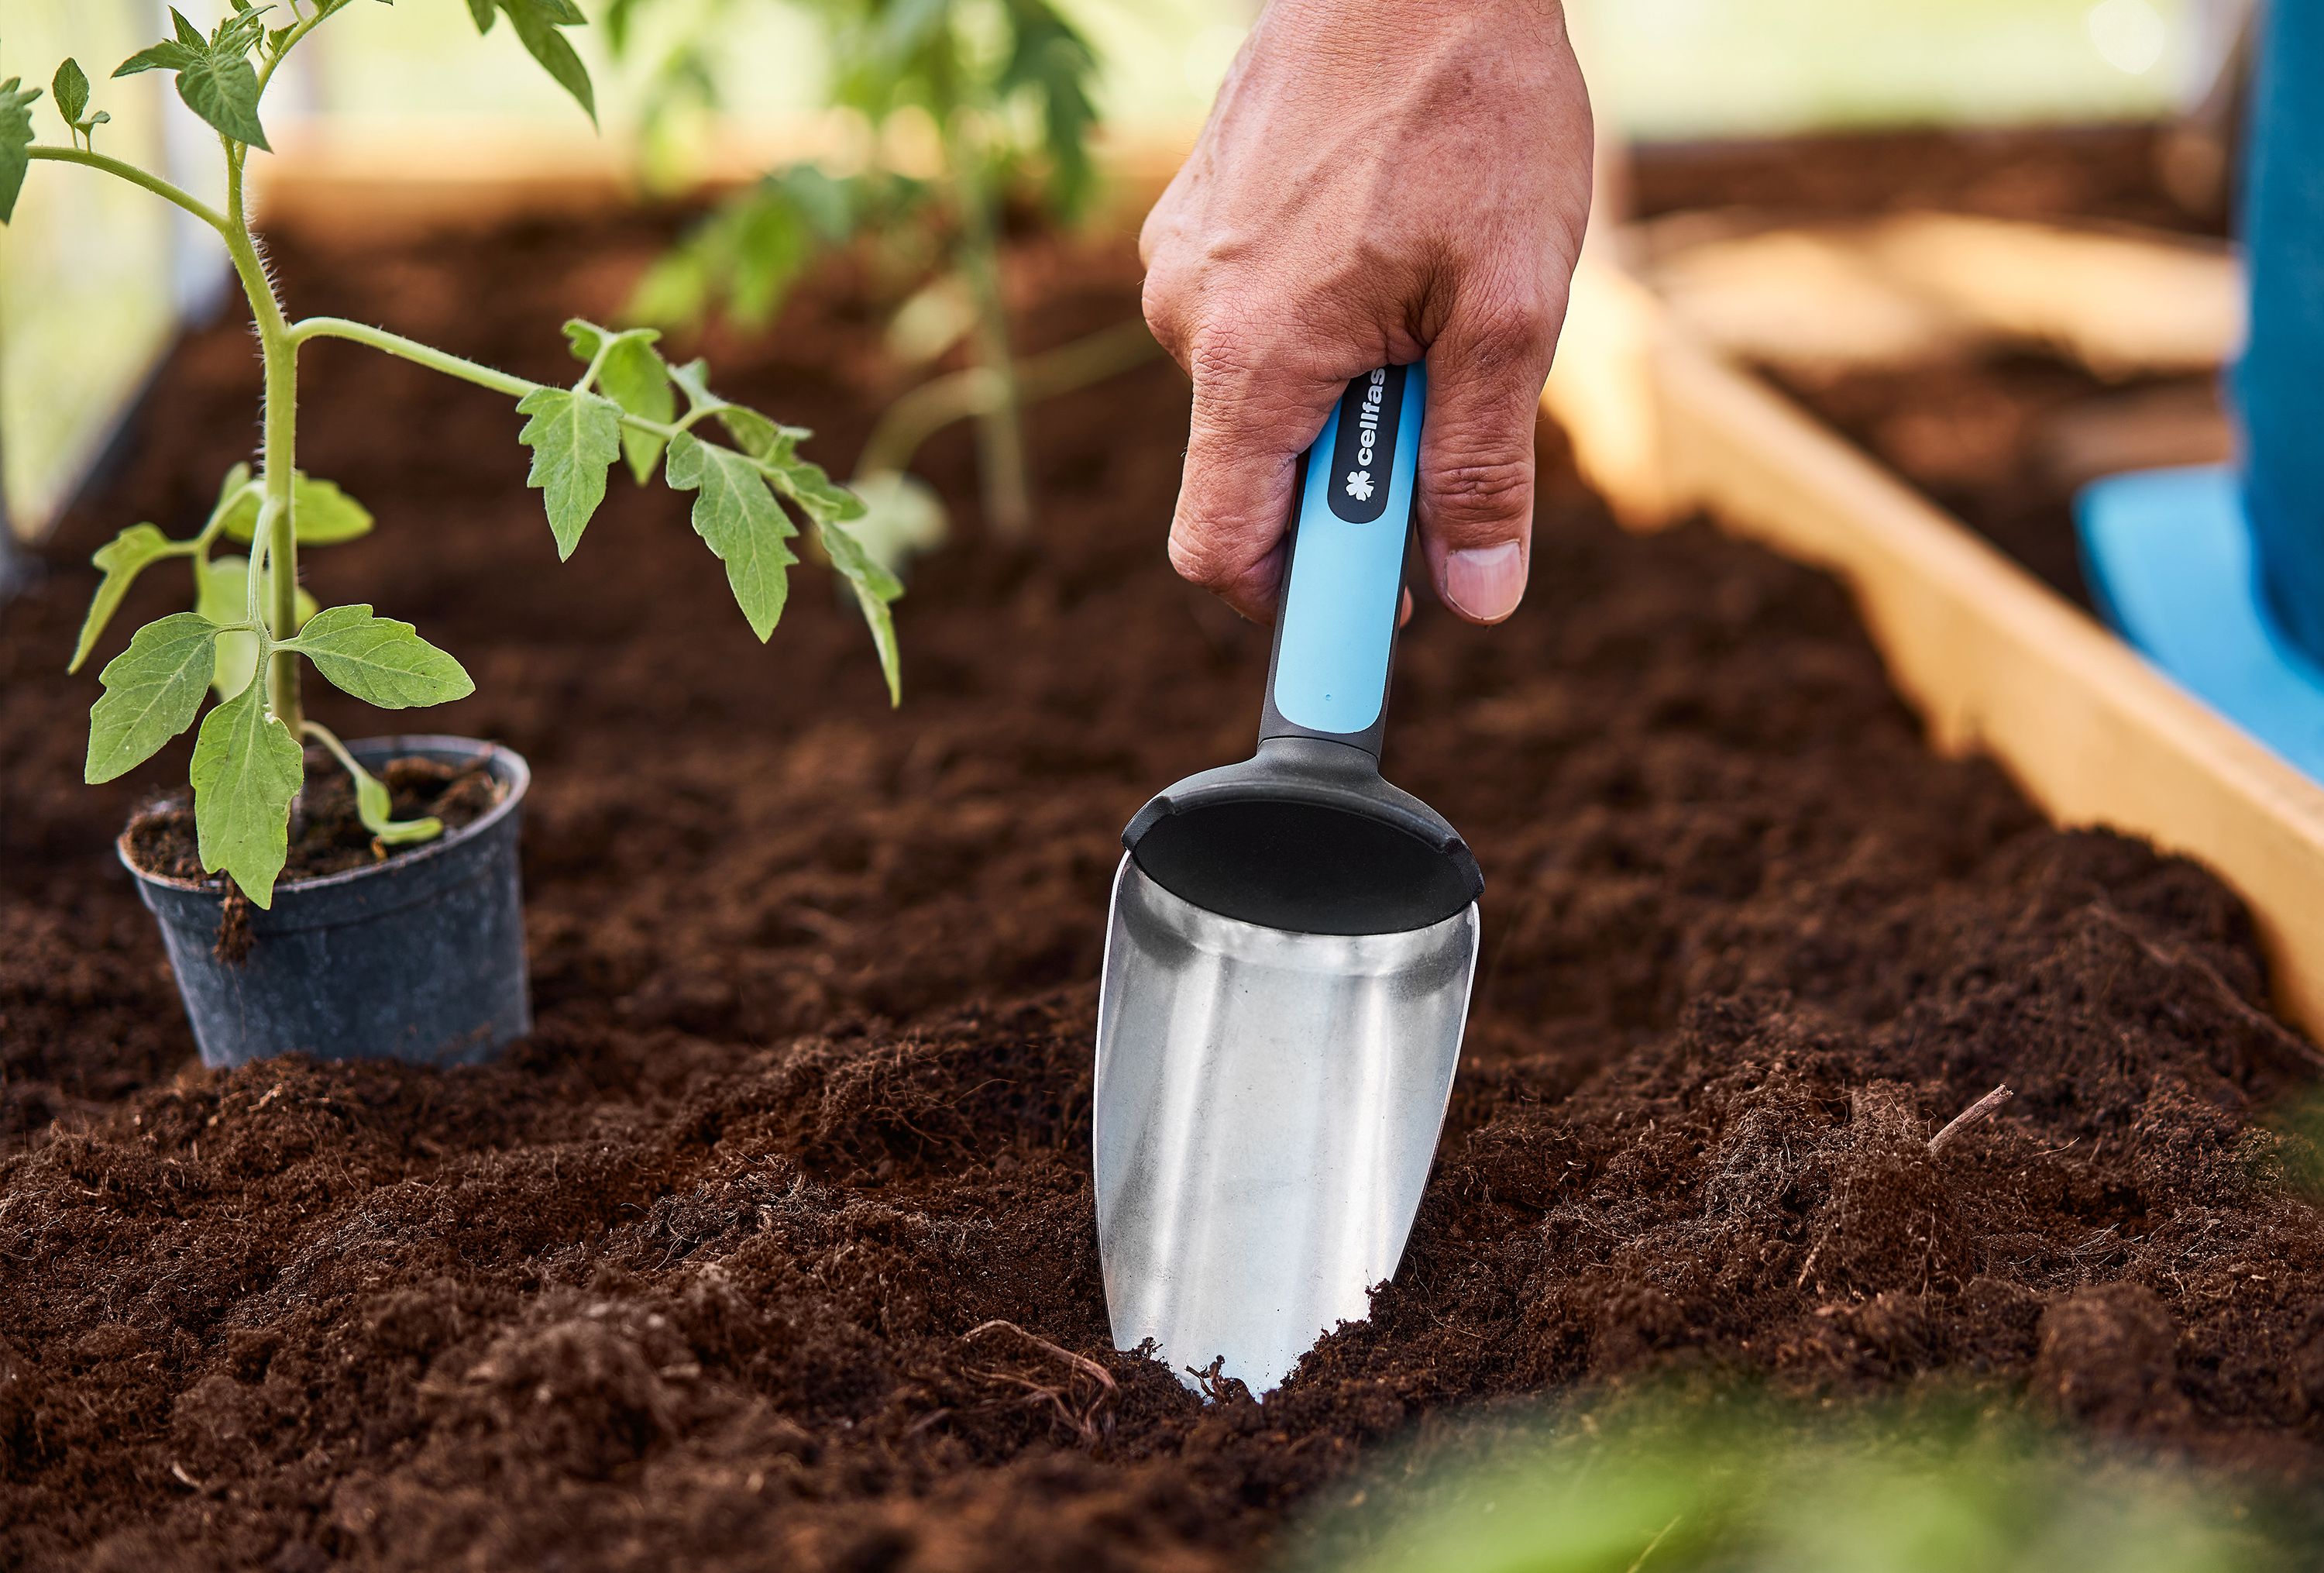 Tworzysz swój pierwszy zestaw małych narzędzi ogrodniczych? Sprawdź, które wybrać!